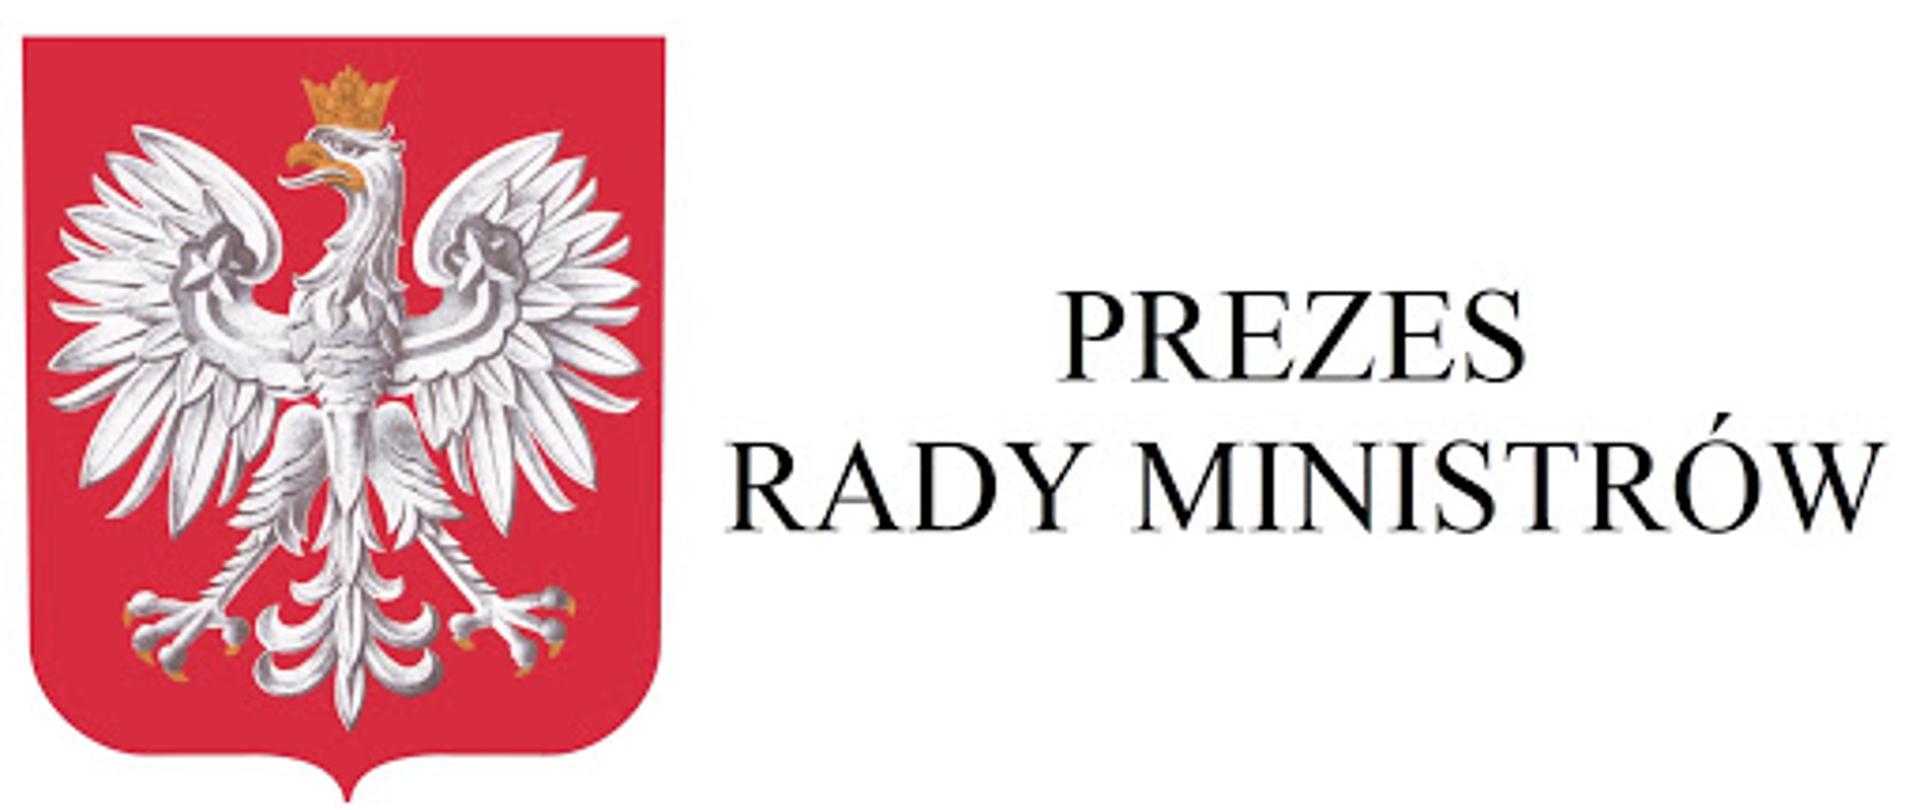 Godło Polski na czerwonym tle, po prawej stronie napis Prezes Rady Ministrów